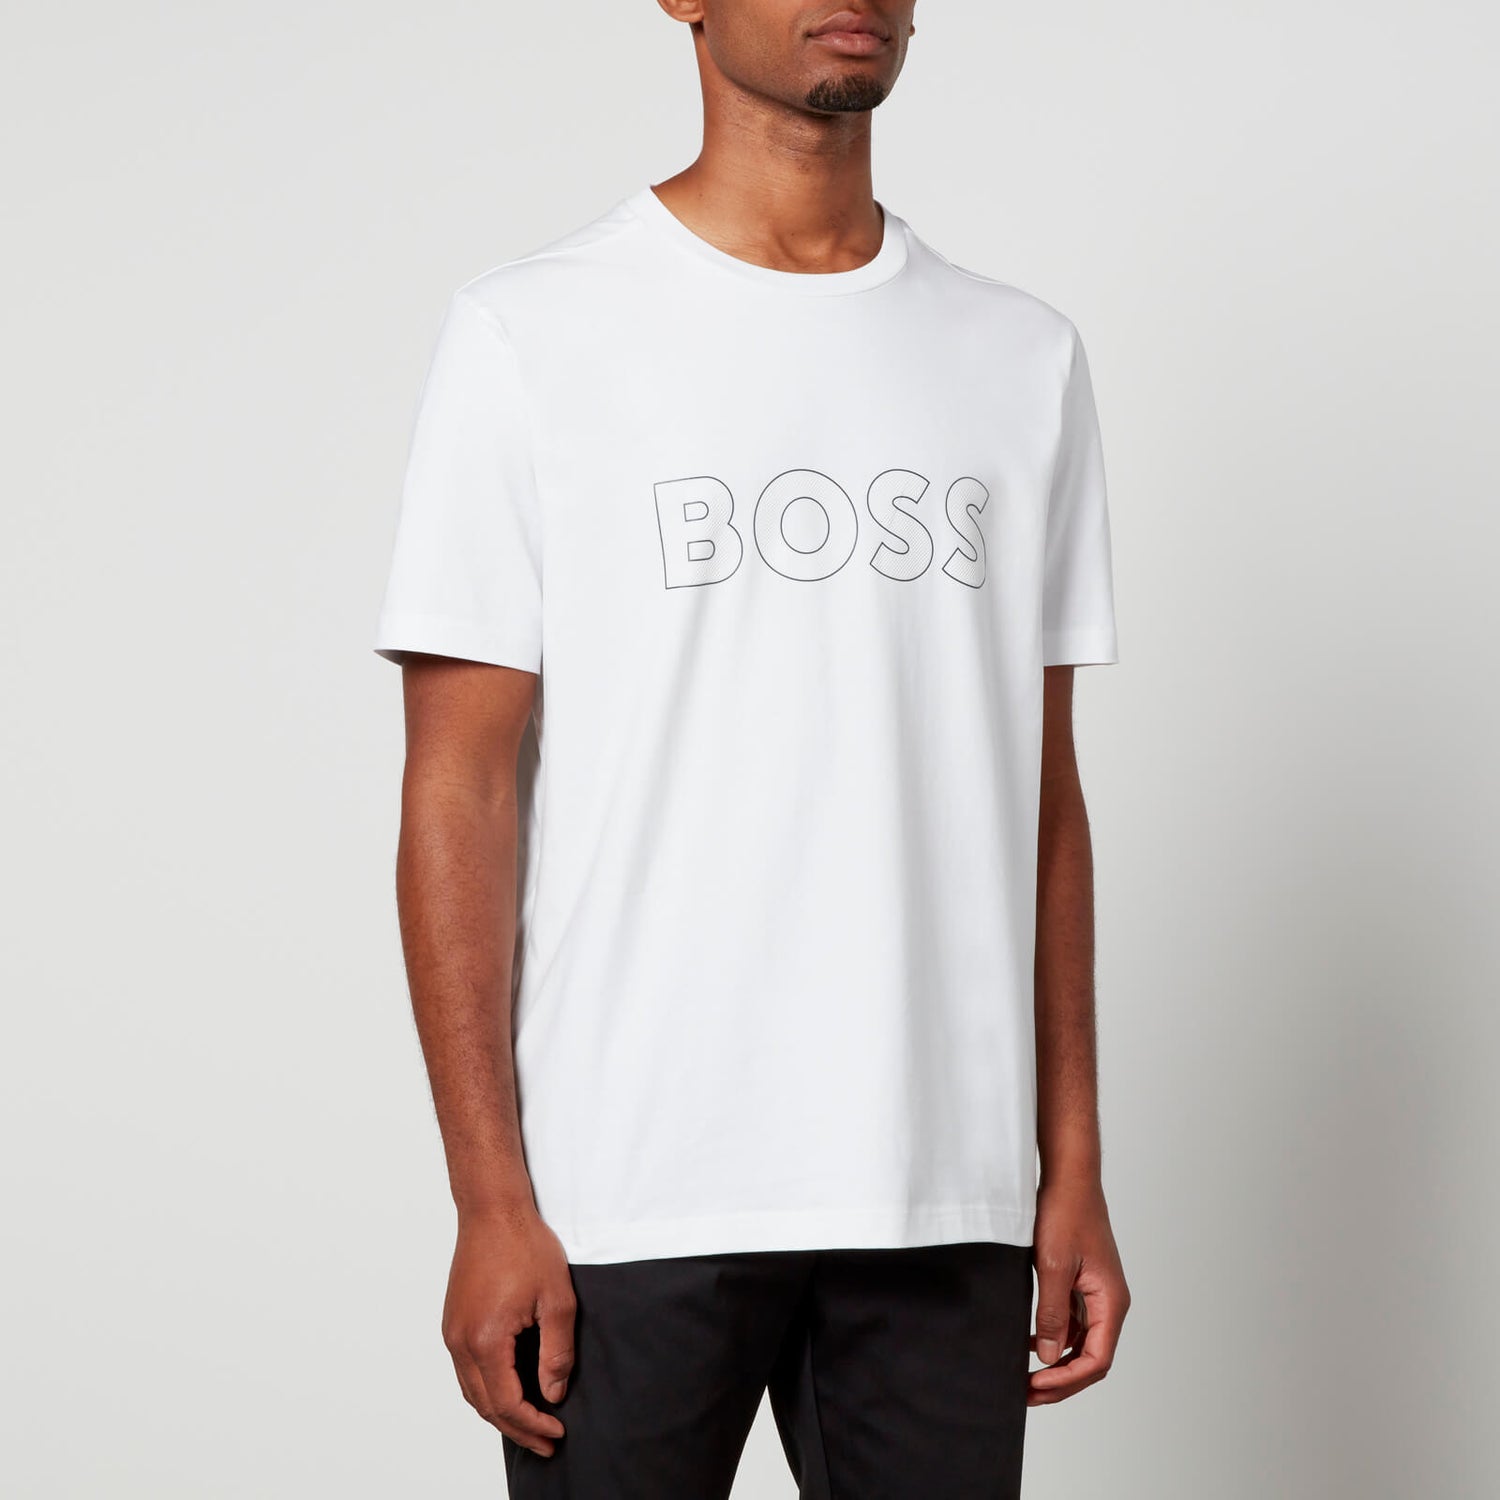 BOSS Green 9 Logo Cotton-Blend T-Shirt - S